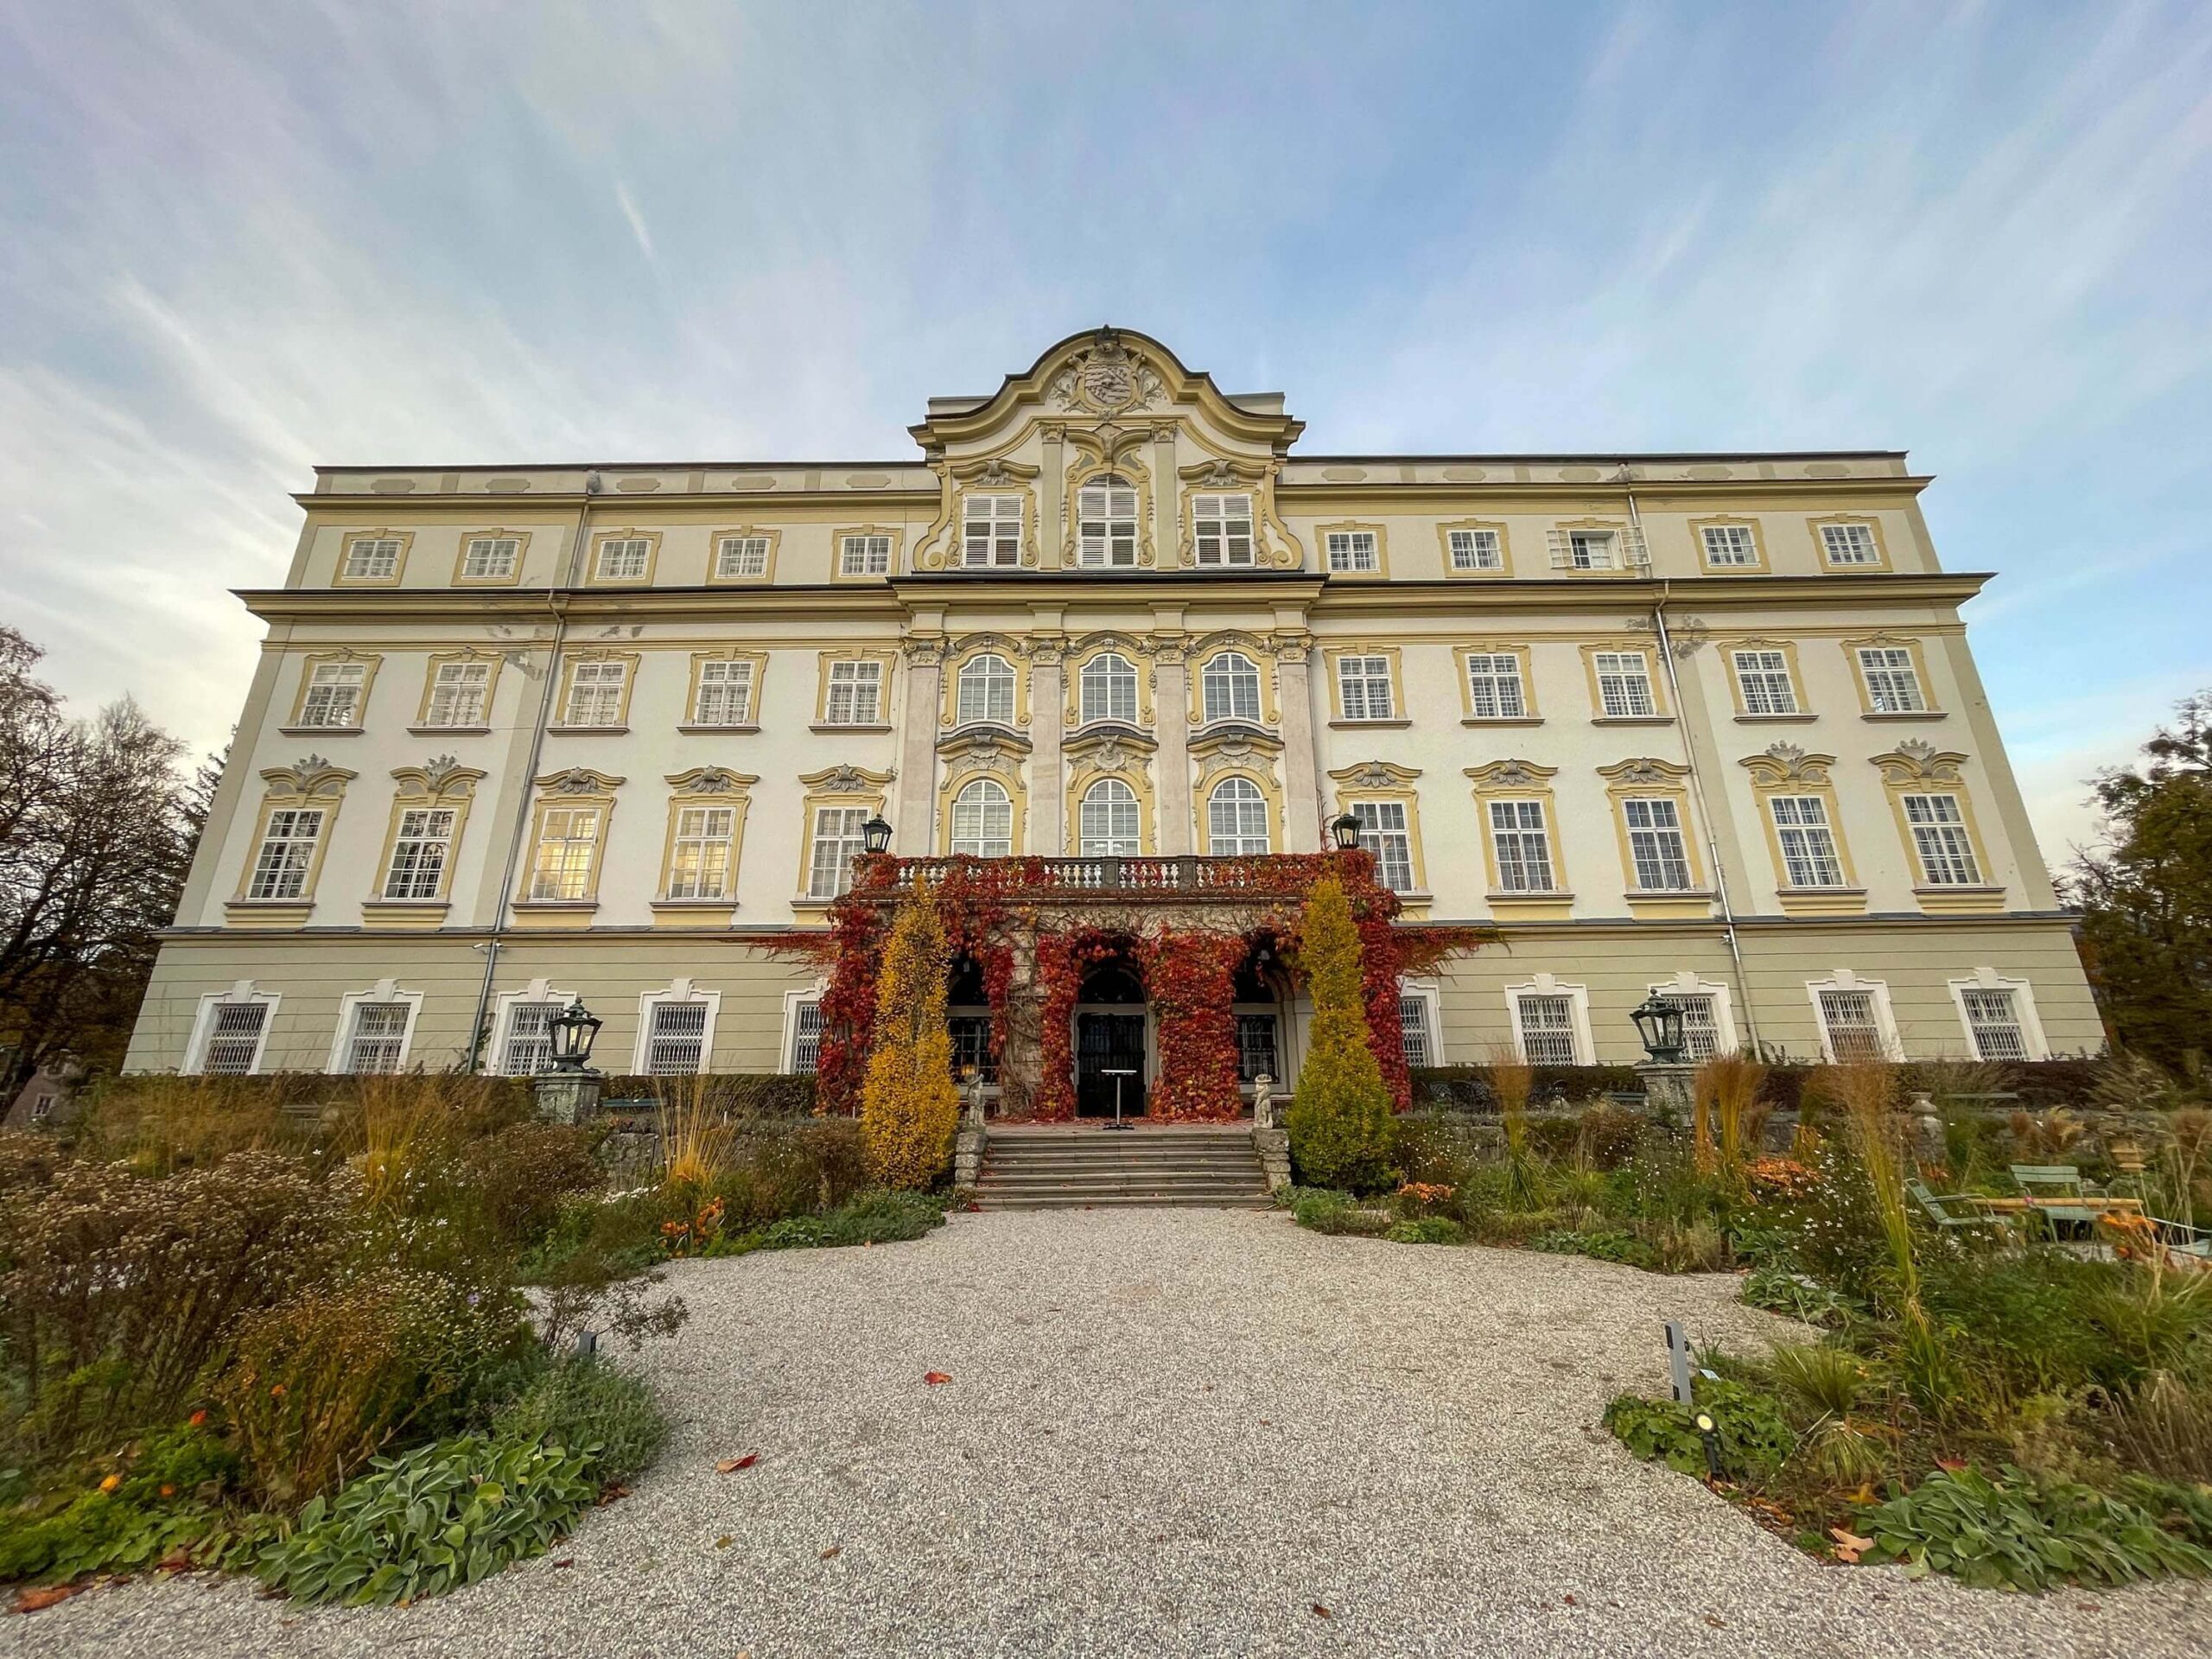 Hotel Schloss Leopoldskron in Salzburg in autumn